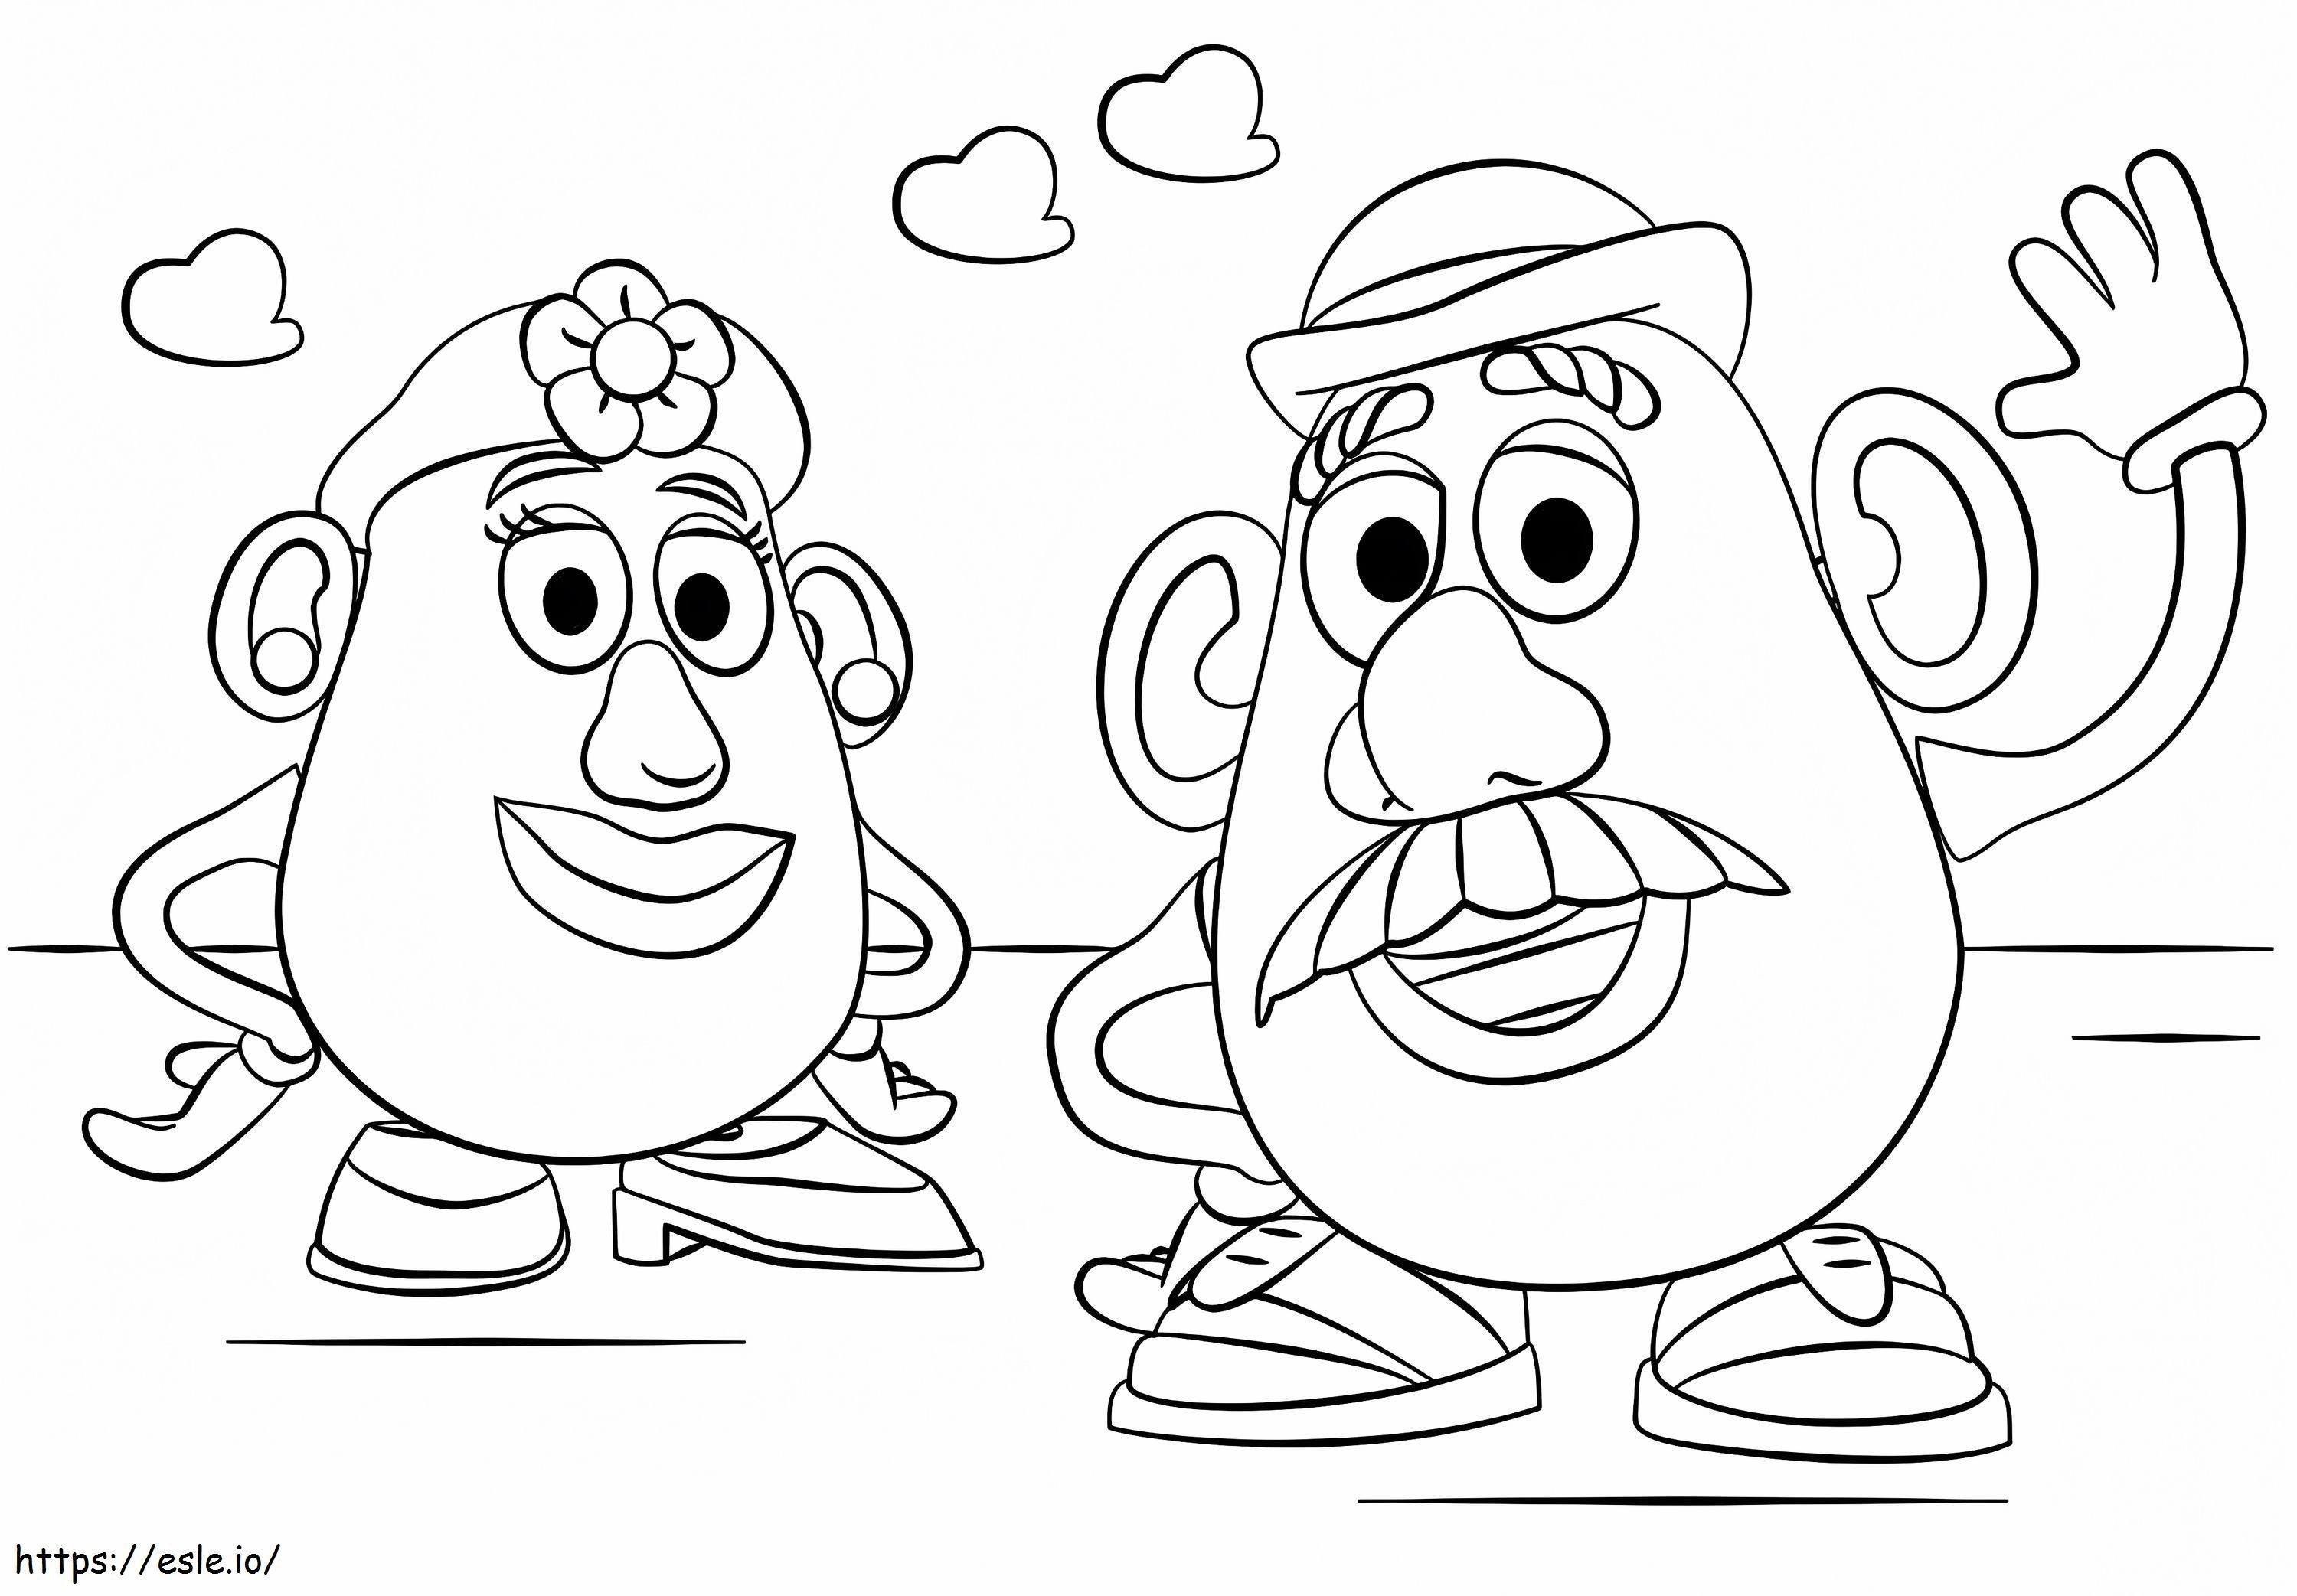 Mr. und Mrs. Potato Head ausmalbilder